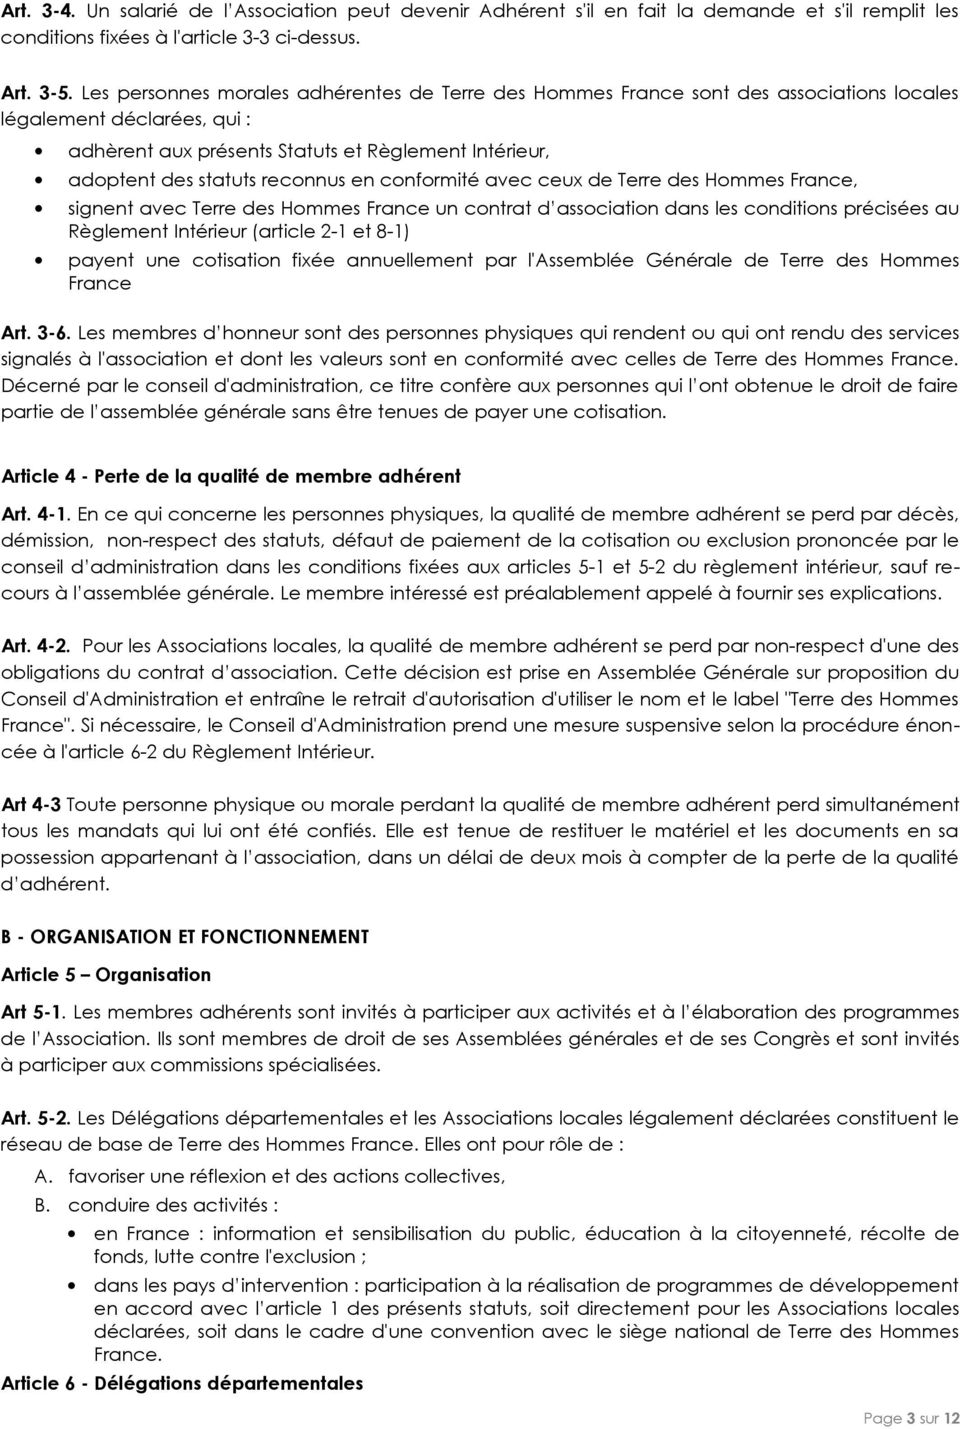 reconnus en conformité avec ceux de Terre des Hommes France, signent avec Terre des Hommes France un contrat d association dans les conditions précisées au Règlement Intérieur (article 2-1 et 8-1)